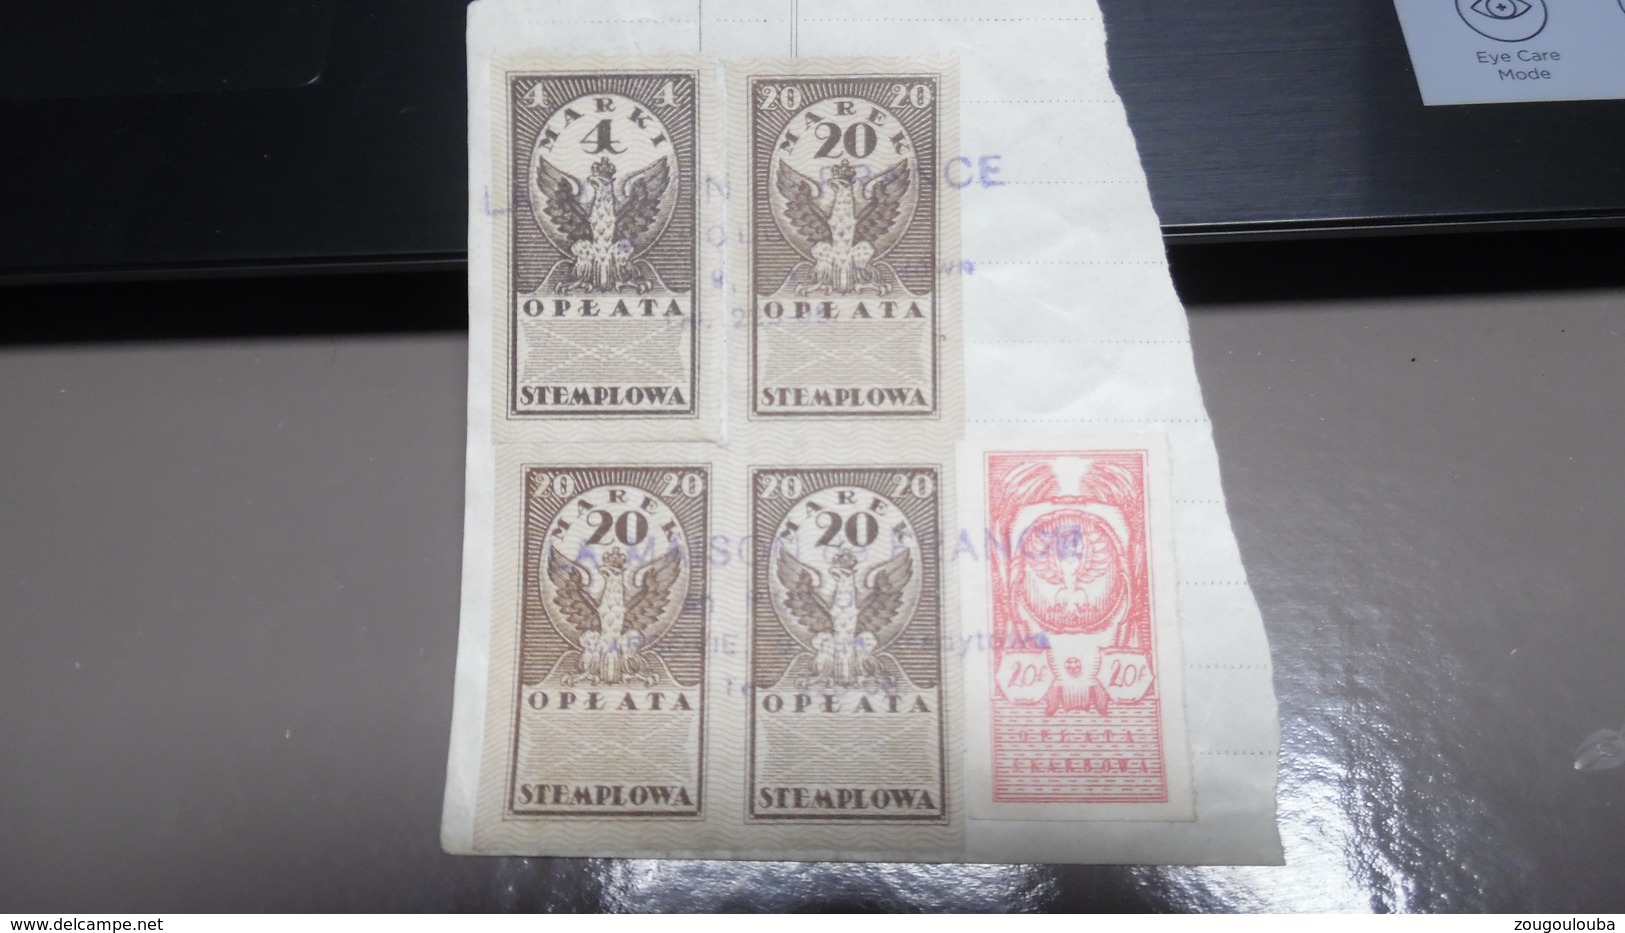 Pologne Timbre Fiscaux Revenue 1920 Cachet La Maison De France En Pologne Varsovie Zaplacono - Revenue Stamps